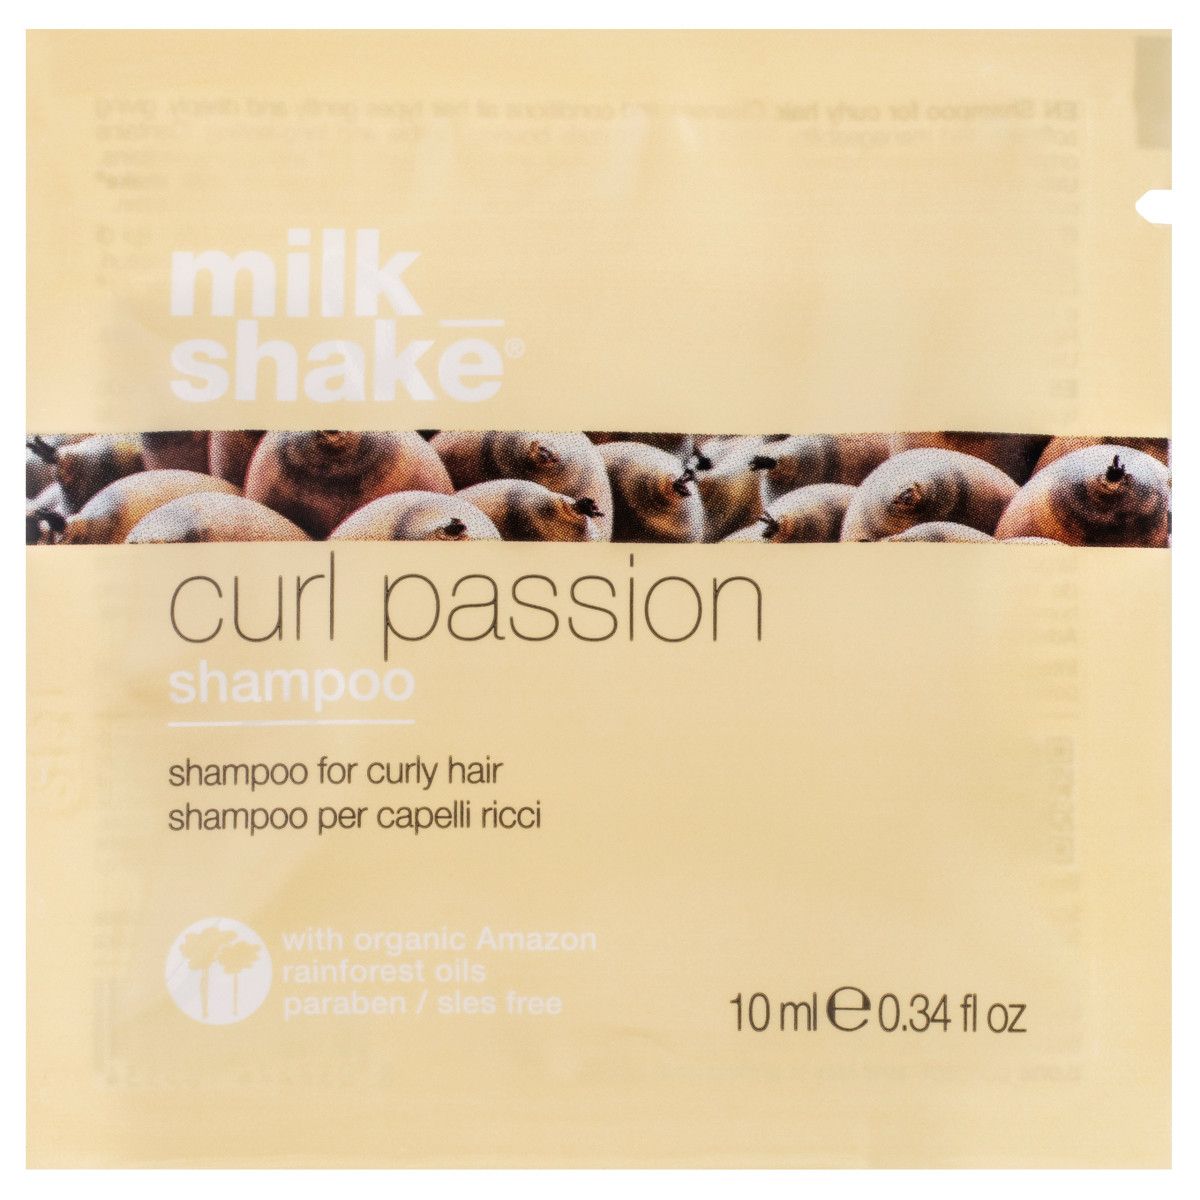 Milk Shake Curl Passion Shampoo - szampon do włosów kręconych, 10ml